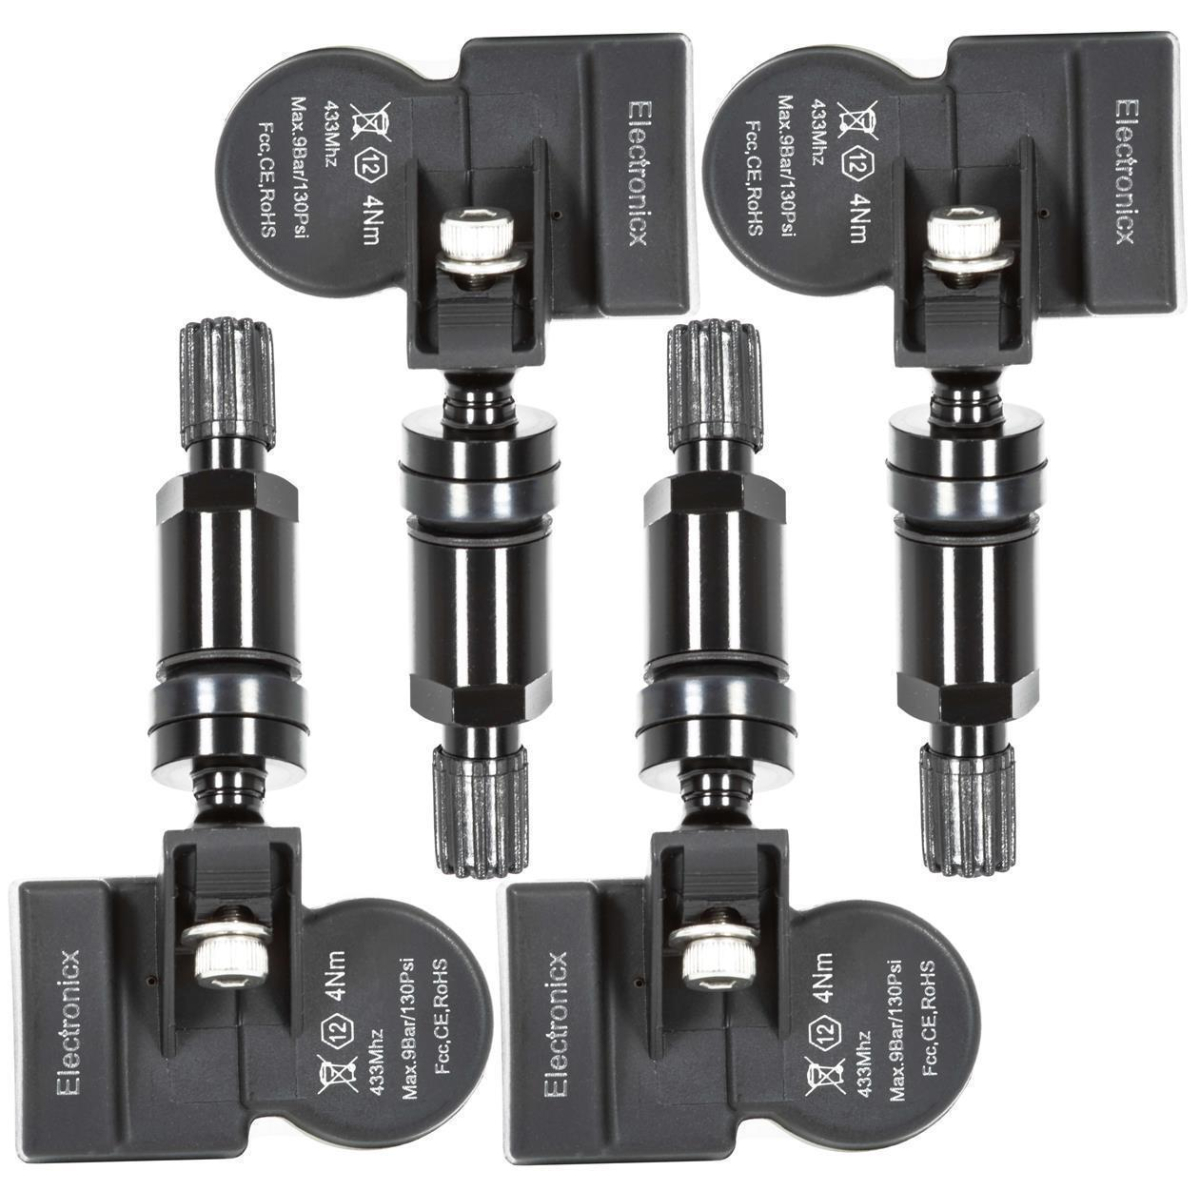 4x TPMS tire pressure sensors metal valve black for Alpina BMW MINI Rolls Royce 36106798872